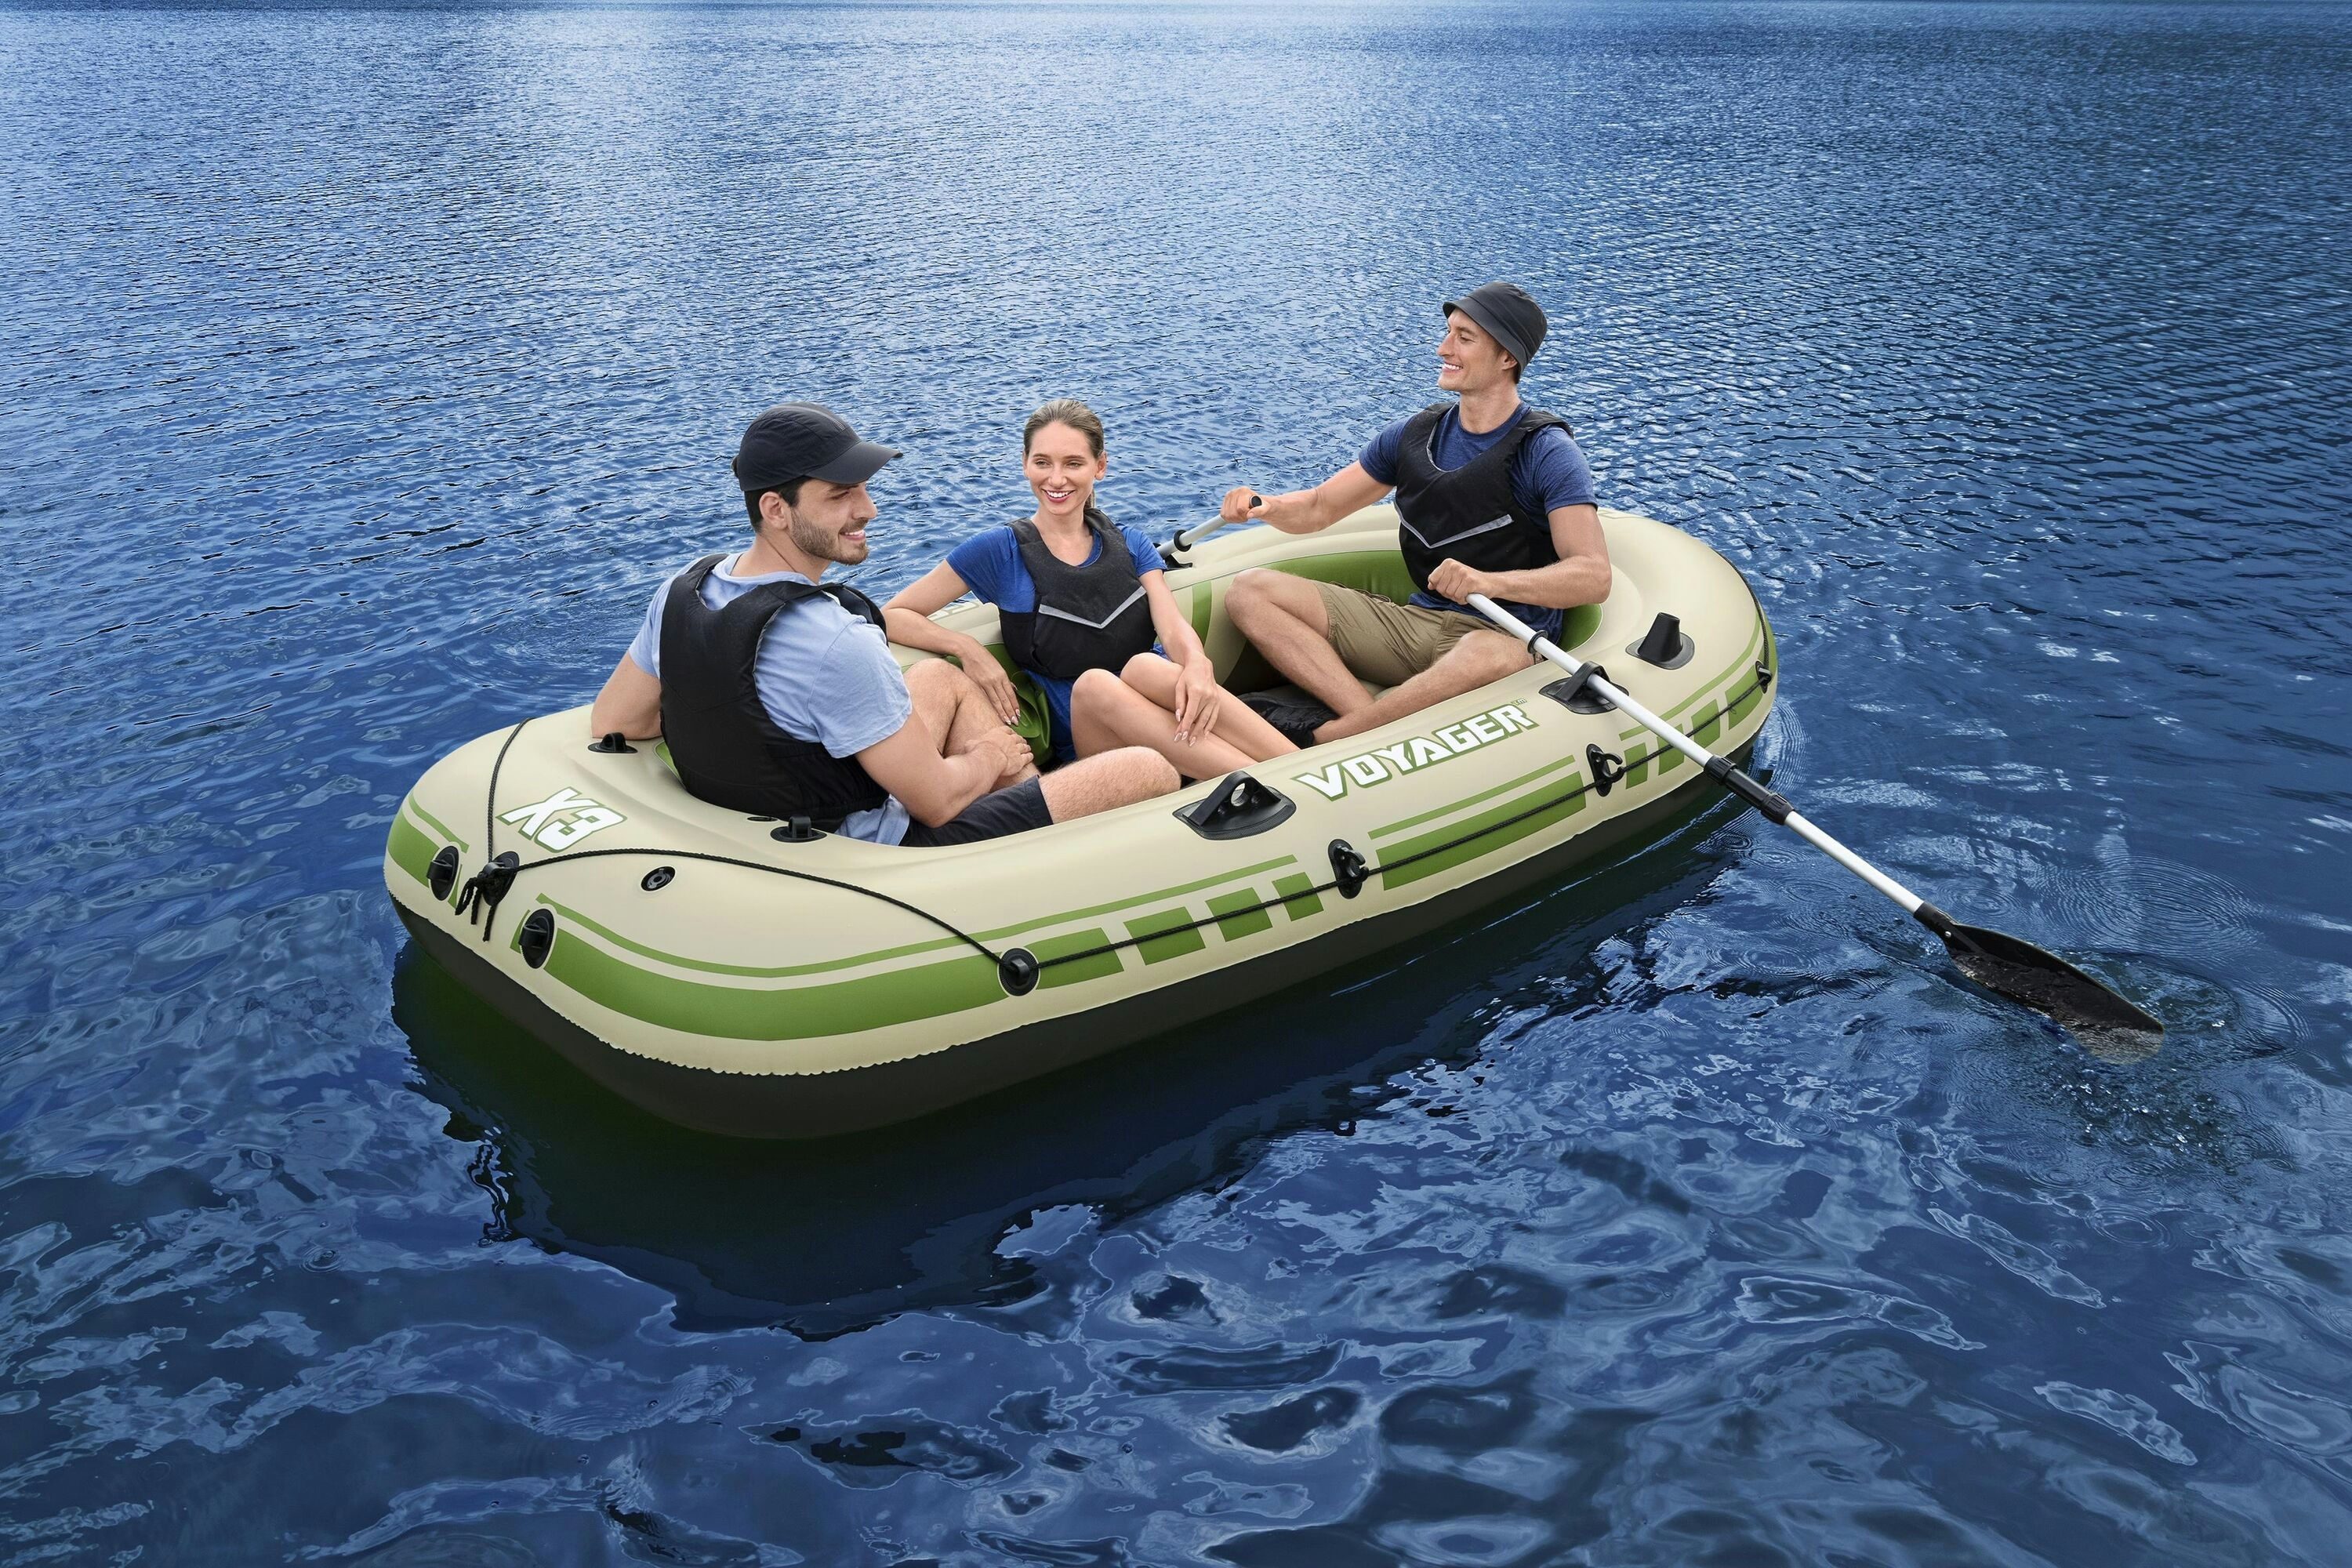 Sports d'eau Bateau gonflable Voyager™ X3 set Hydro-Force™, 294 x 137 cm, 3 adultes 360 kg, 2 pagaies, un sac de transport et de rangement et une pompe à air Bestway 1